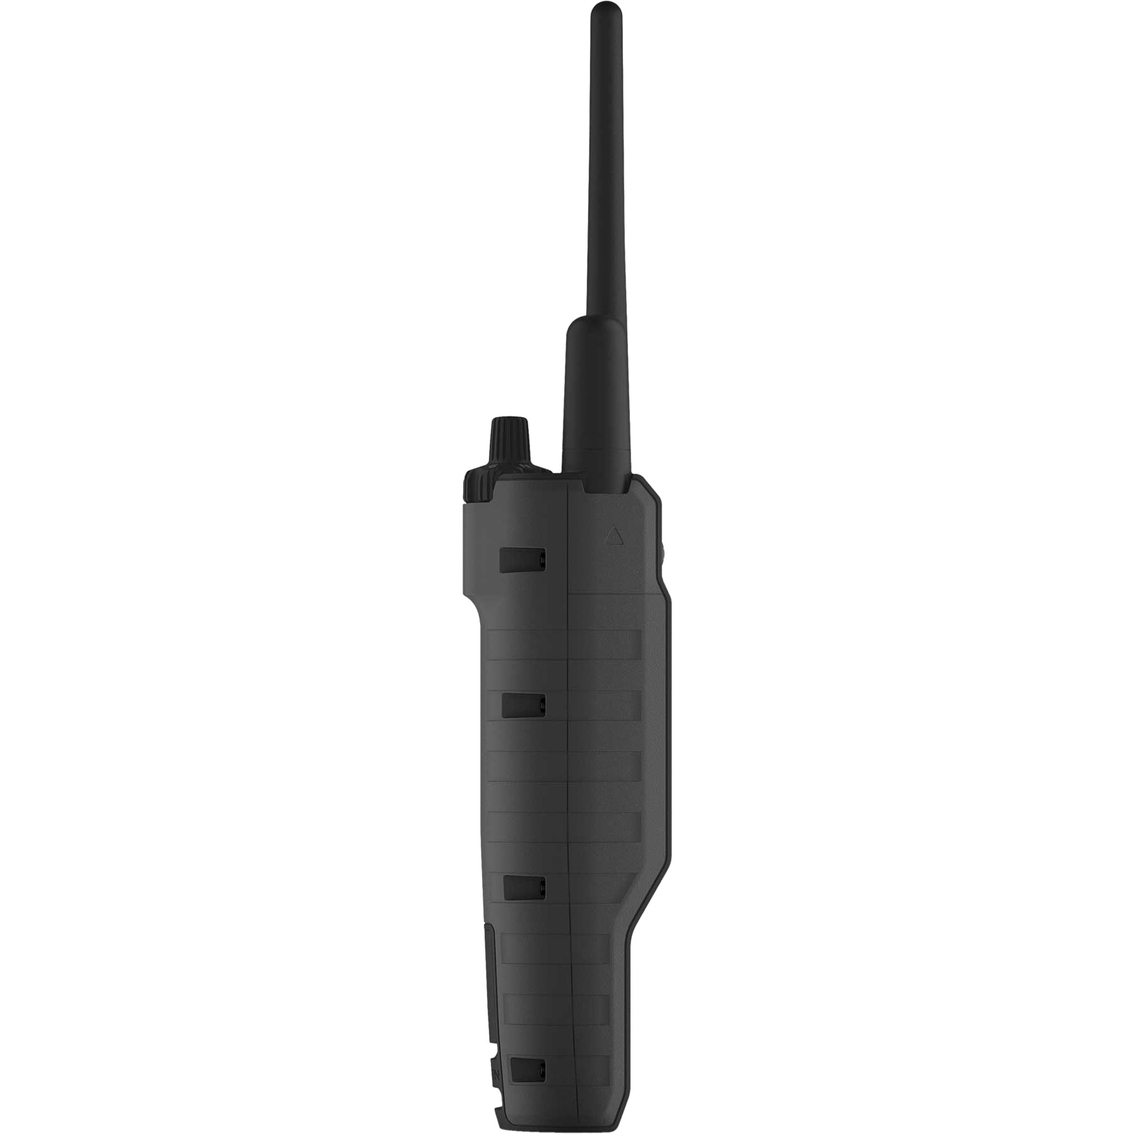 Garmin Pro 550 Plus Handheld Dog Training and Tracking Device - Image 2 of 3